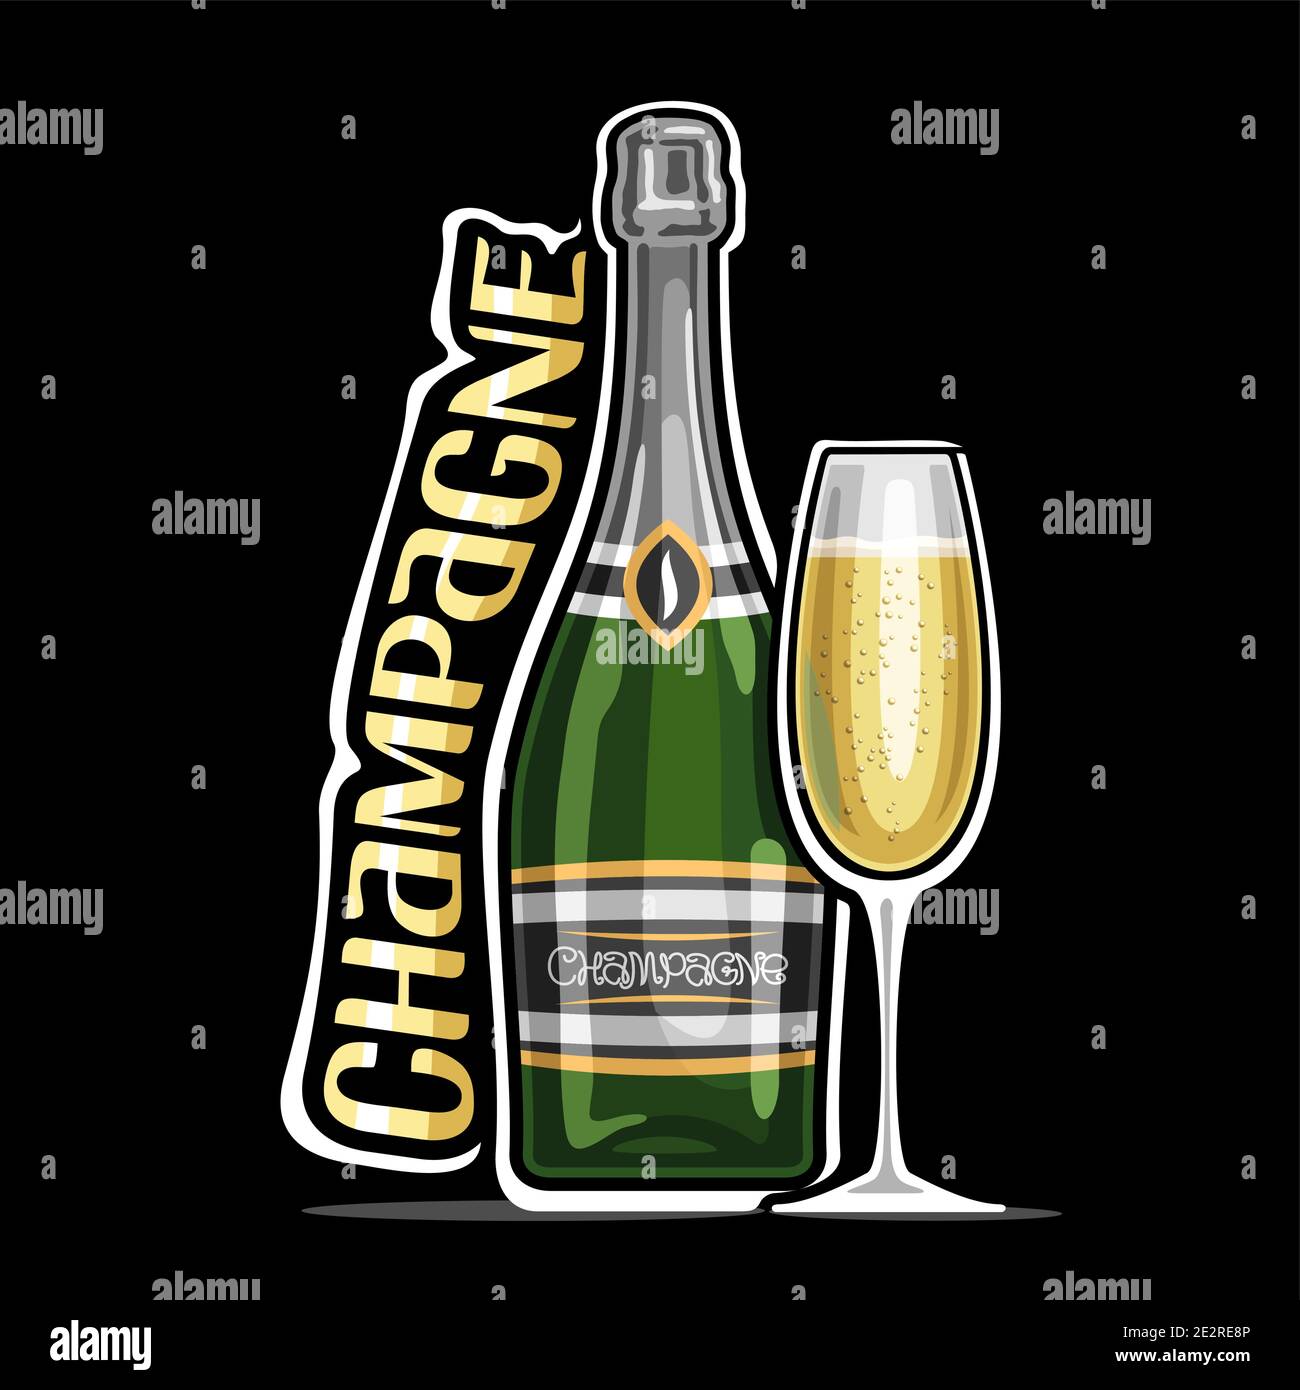 Champagne logo Banque de photographies et d'images à haute résolution -  Alamy